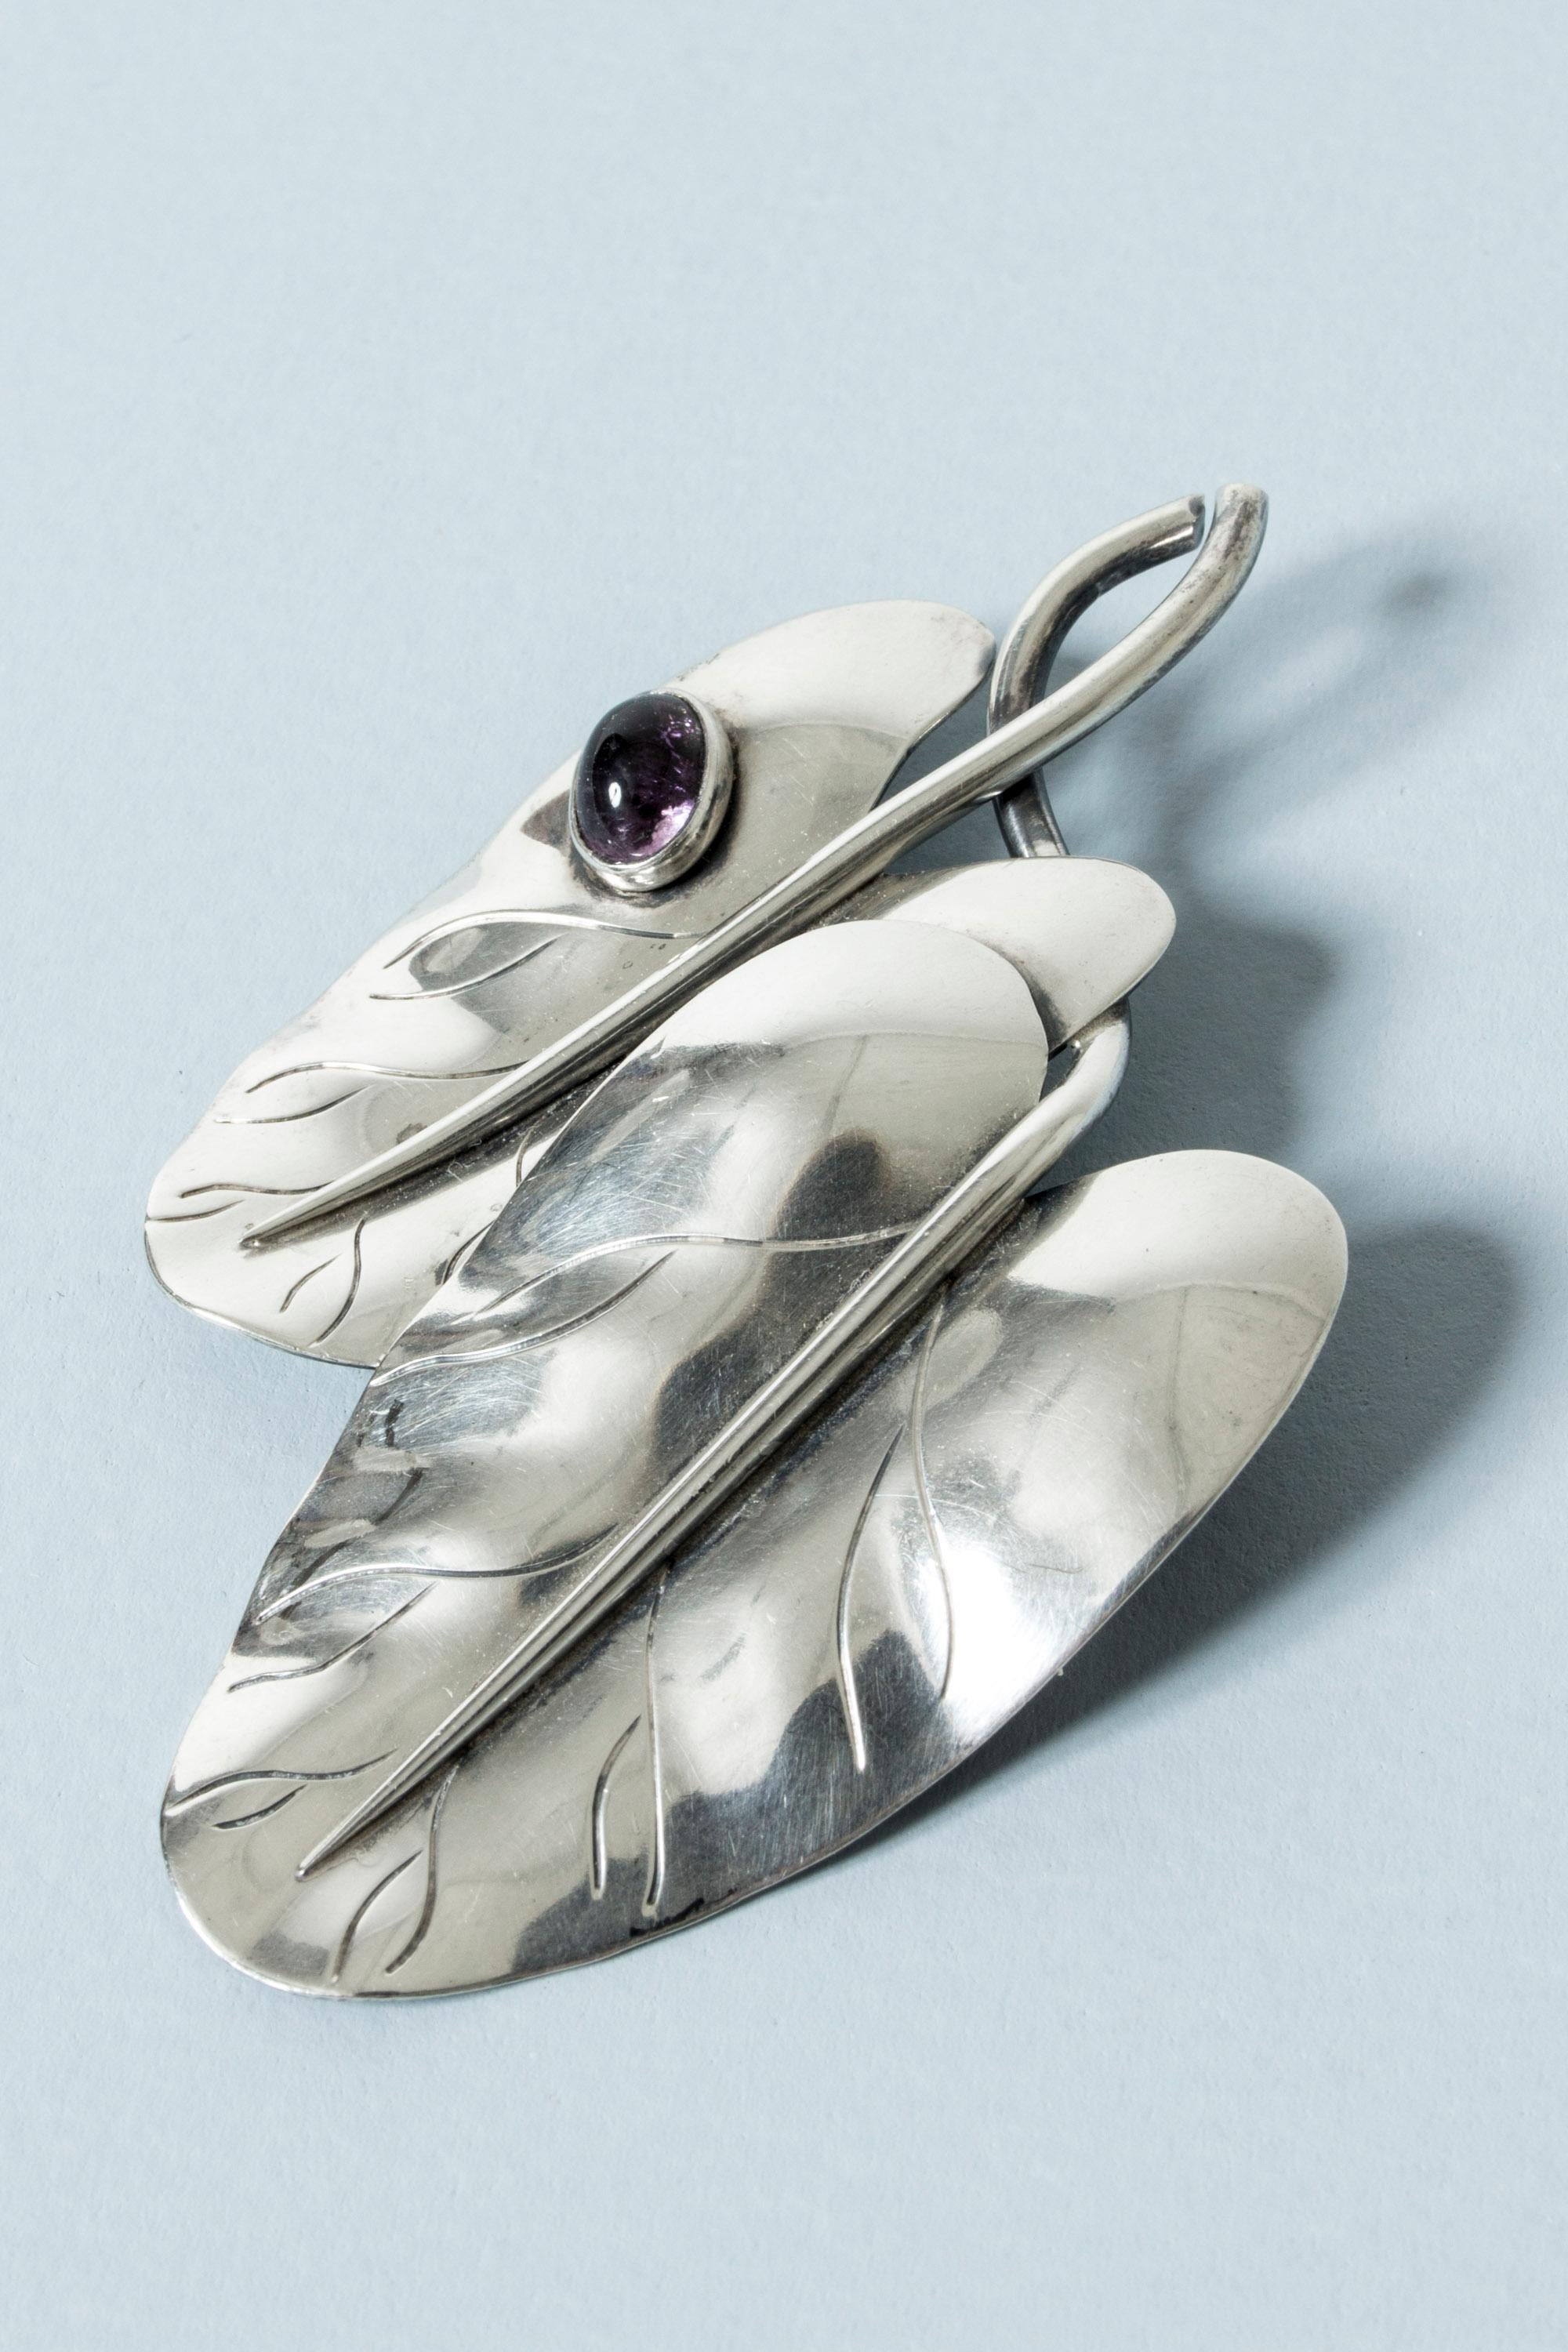 Ball Cut Silver and Amethyst Brooch by Arvo Saarela, Finland, 1955